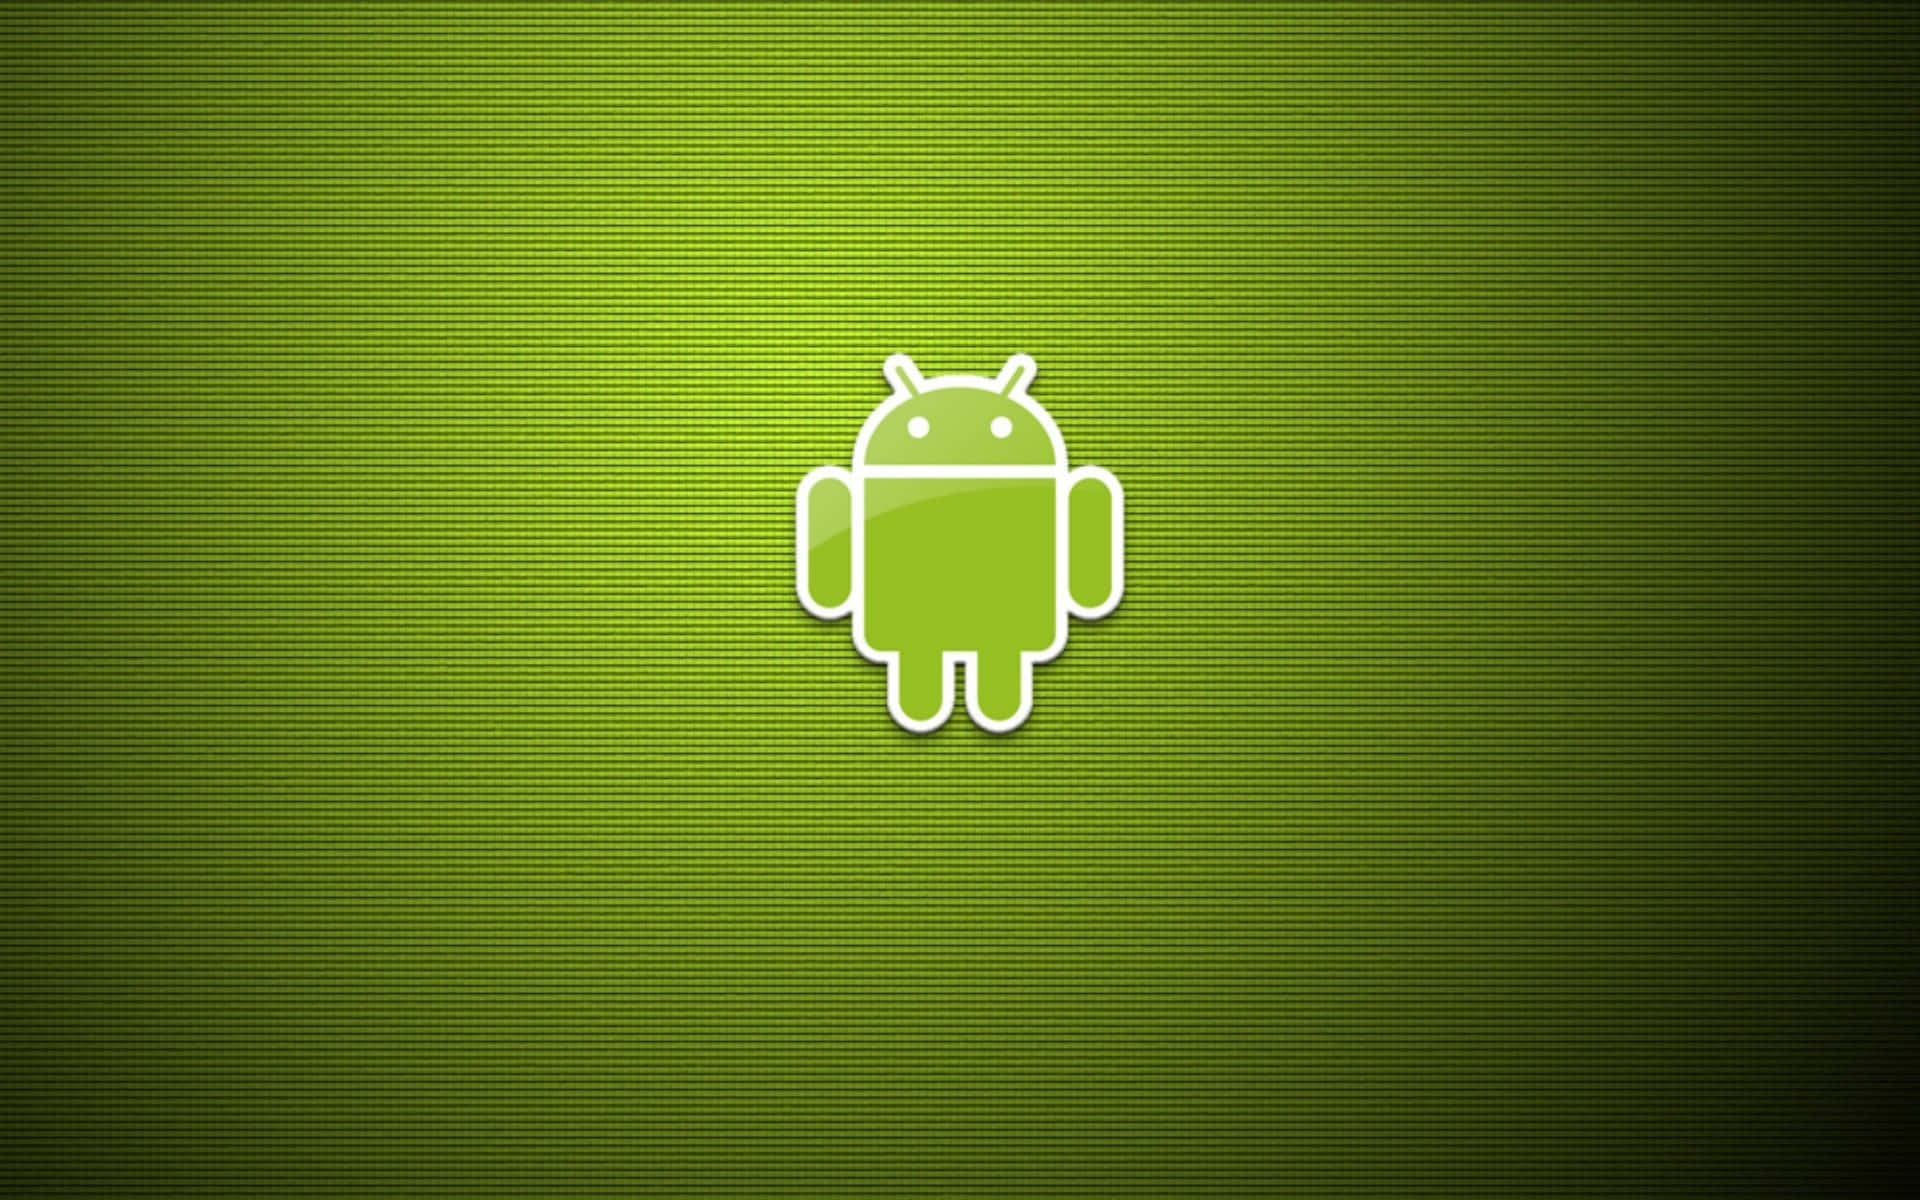 Androidbakgrundsbilder, Hd Bakgrundsbilder, Hd Bakgrundsbilder.